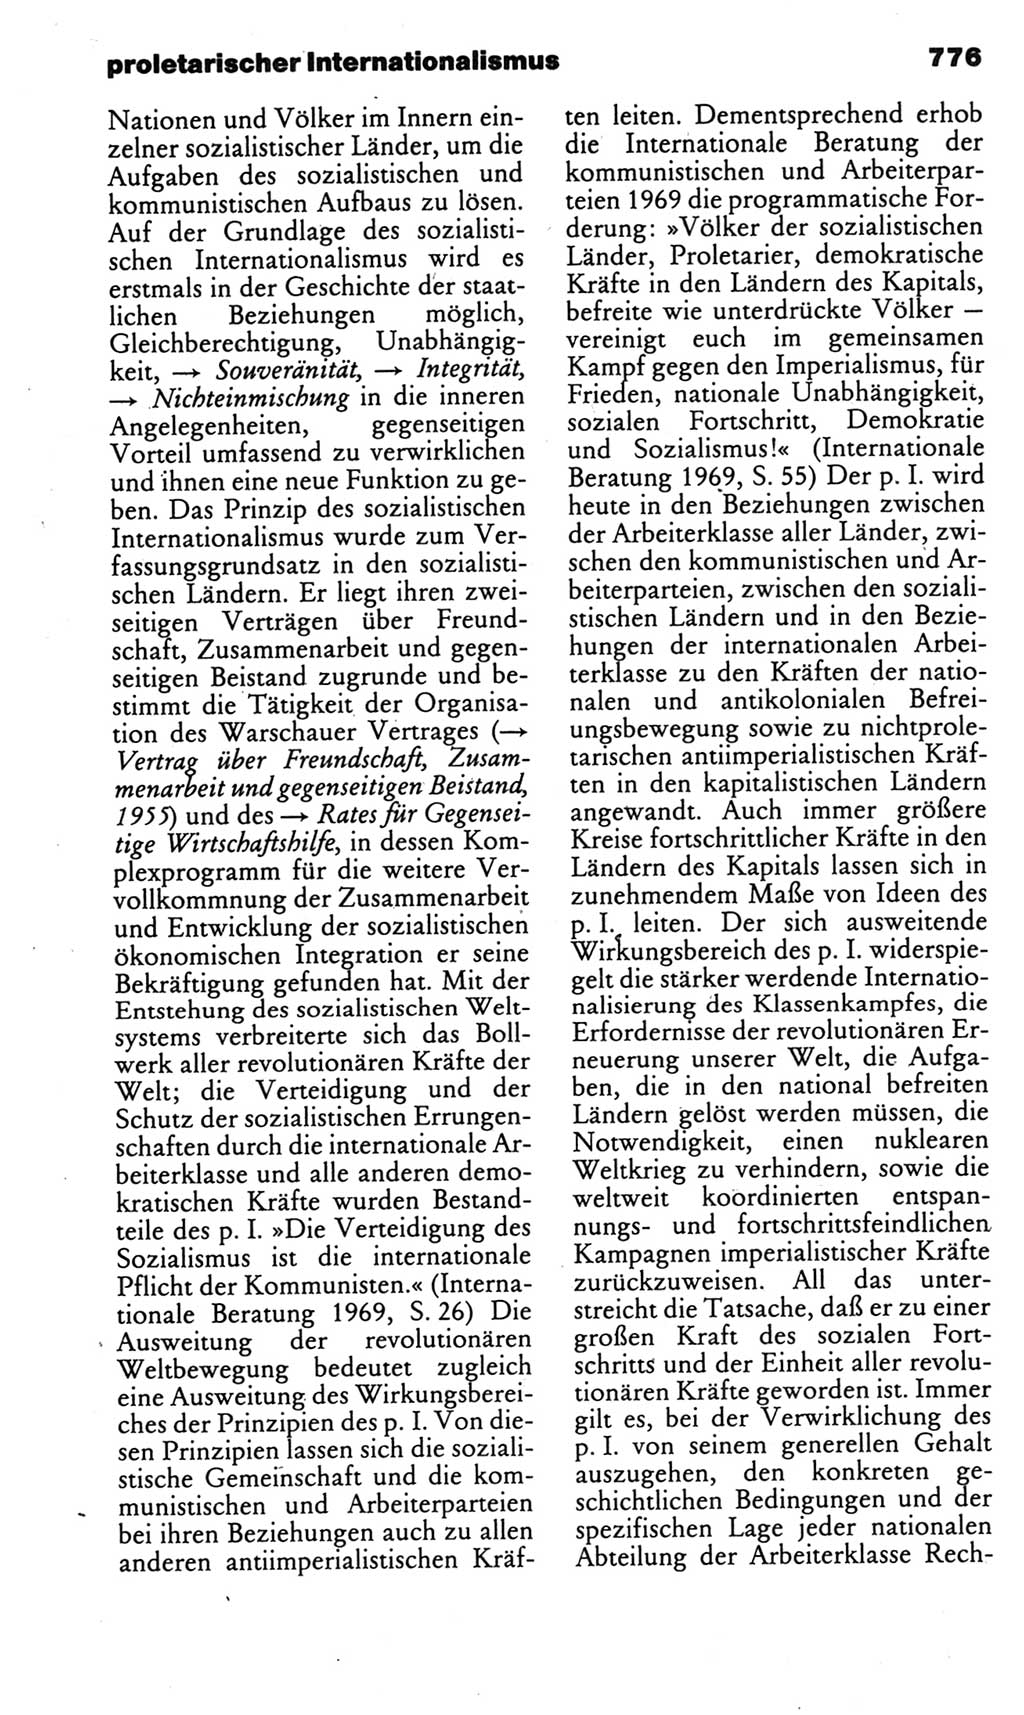 Kleines politisches Wörterbuch [Deutsche Demokratische Republik (DDR)] 1985, Seite 776 (Kl. pol. Wb. DDR 1985, S. 776)